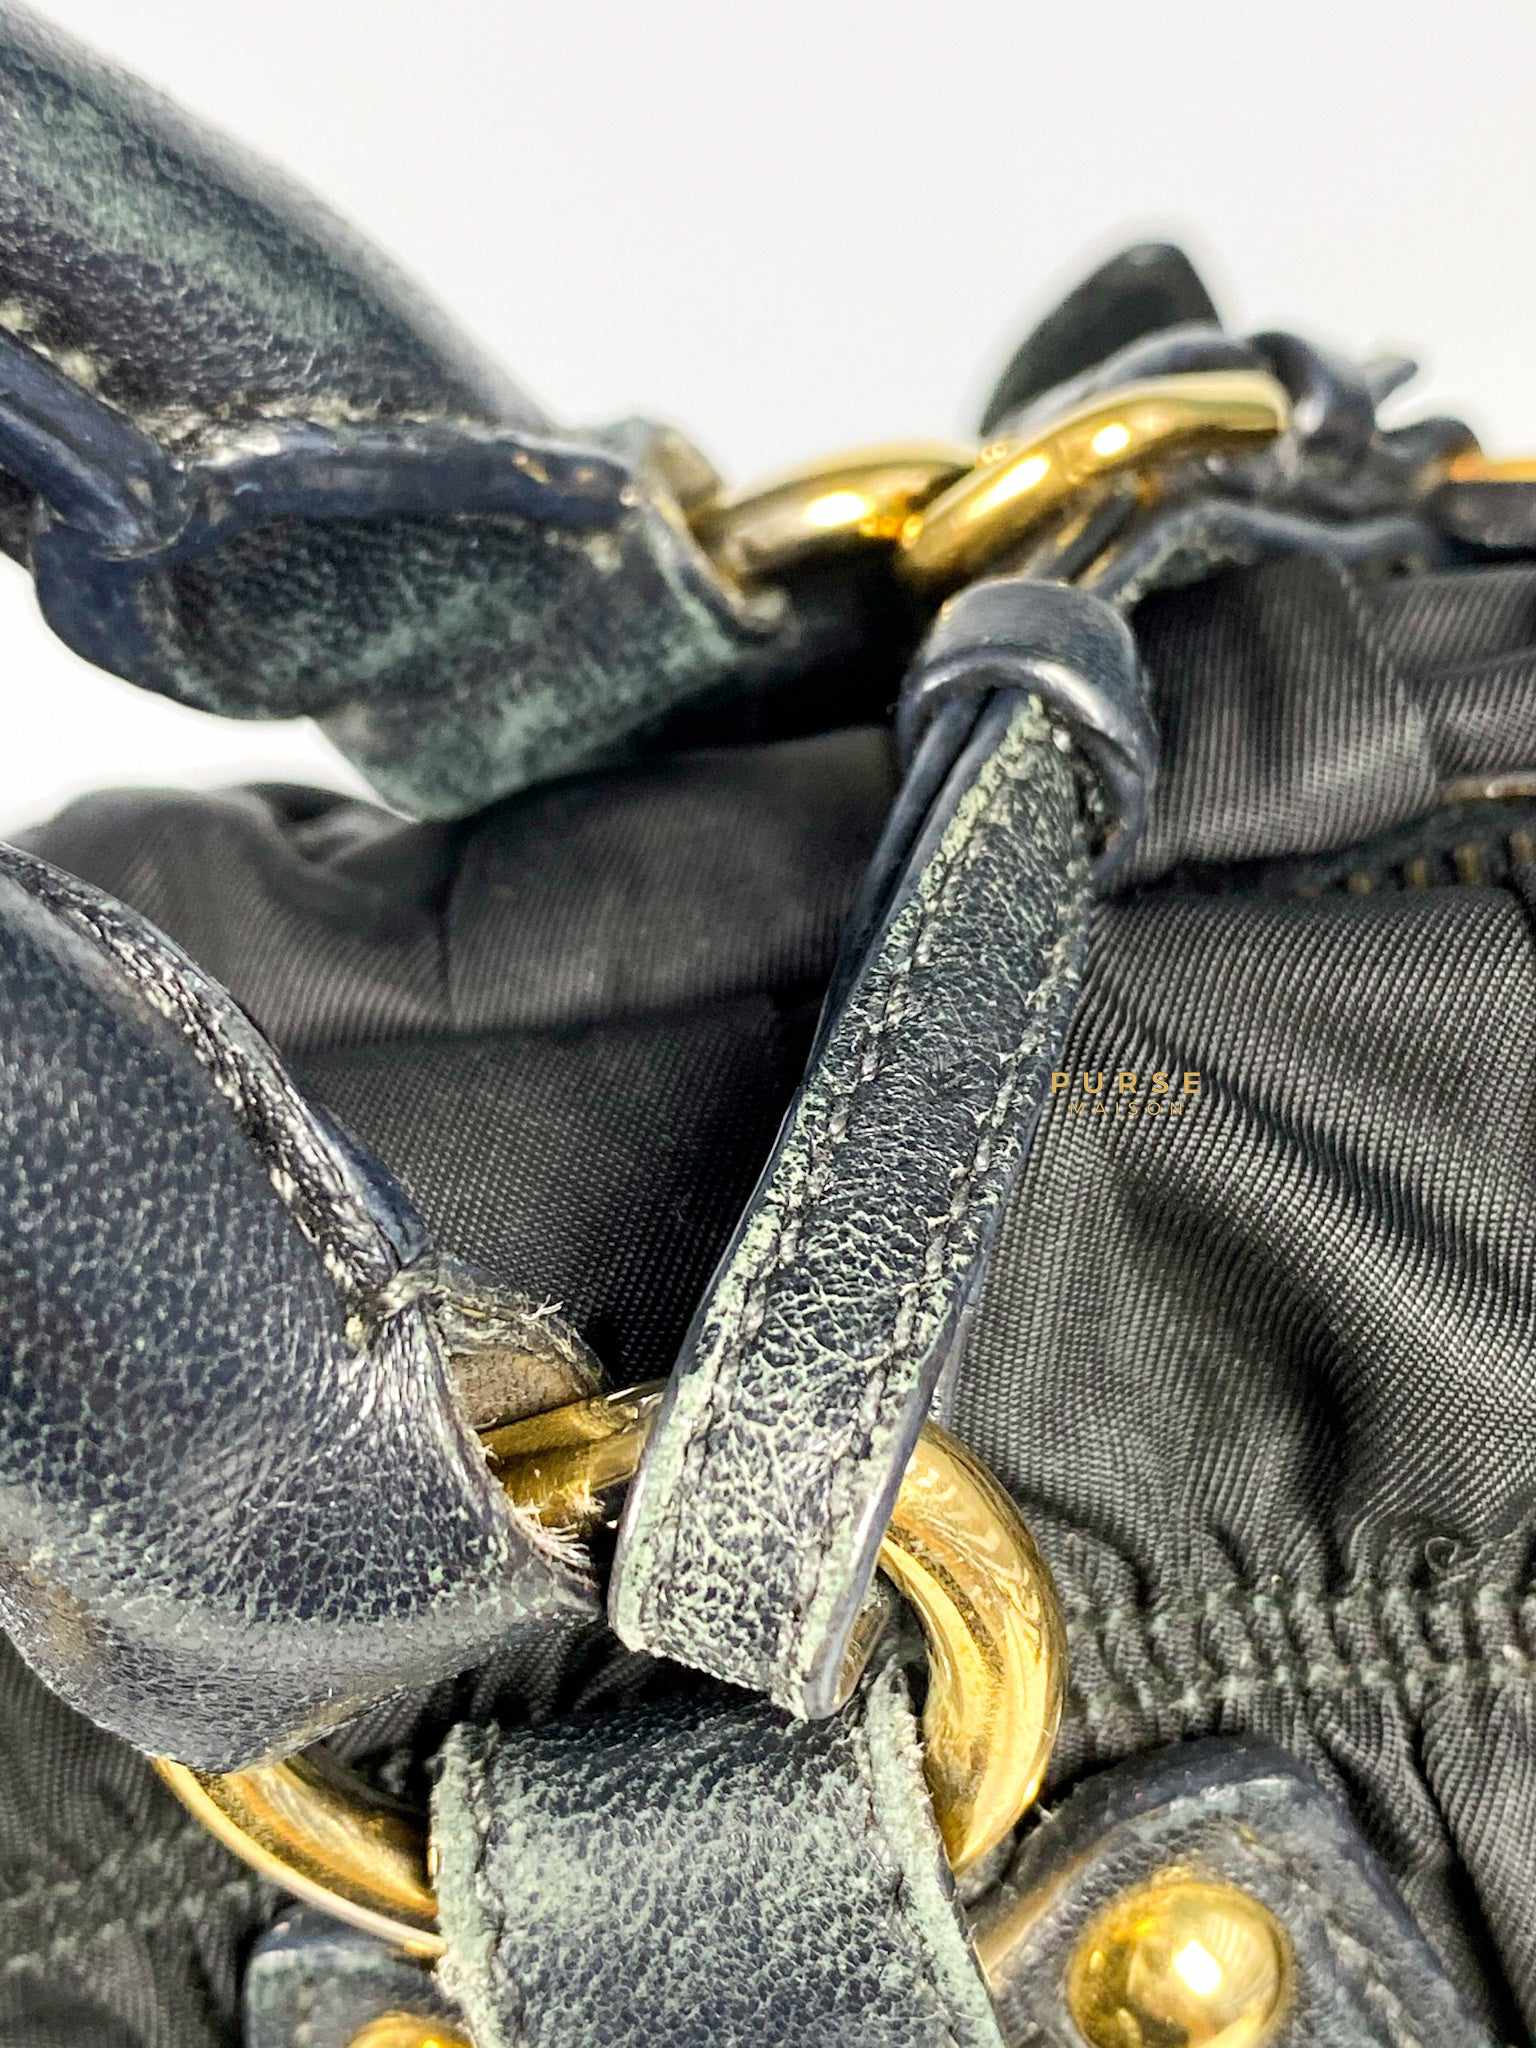 Prada BR5116 Tessuto Soft Calfskin Nero Bag